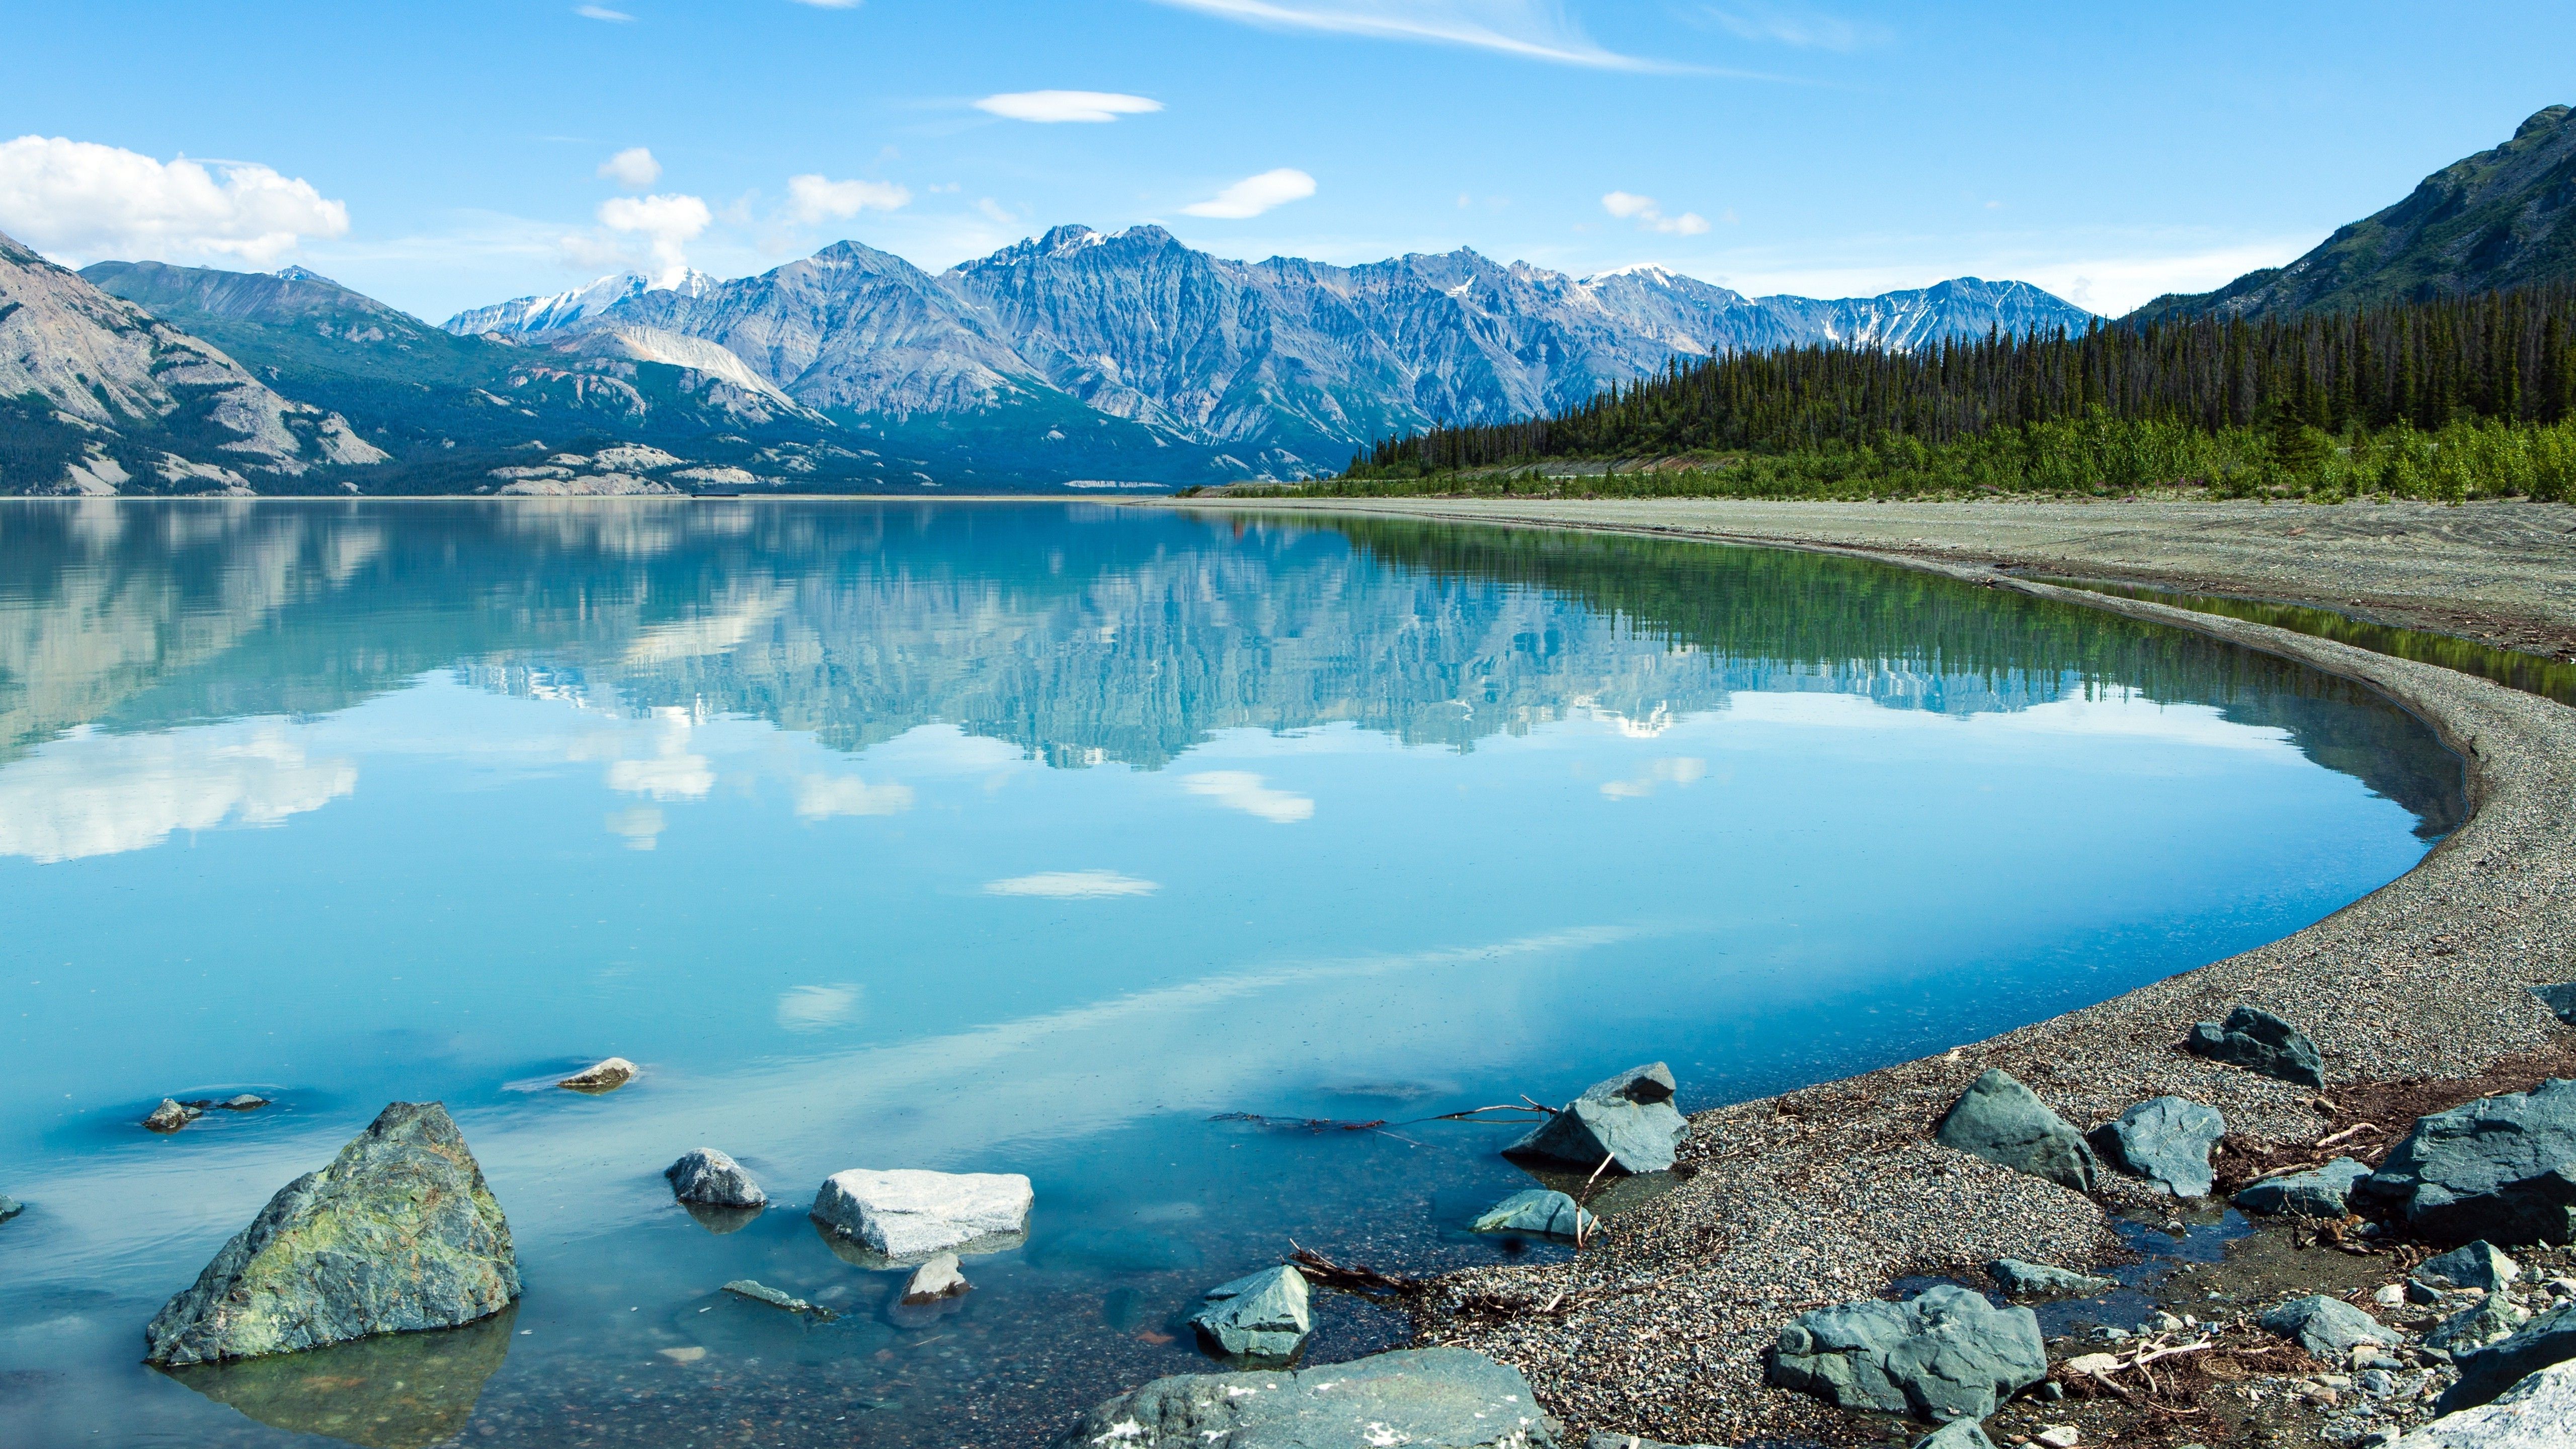 Yukon Wallpapers: Hình nền Yukon là lựa chọn hoàn hảo để làm nền cho màn hình điện thoại của bạn. Với những hình ảnh đẹp, tuyệt vời về vùng đất hoang sơ và hùng vĩ này, bạn sẽ cảm thấy bình yên và thư giãn hơn bao giờ hết.